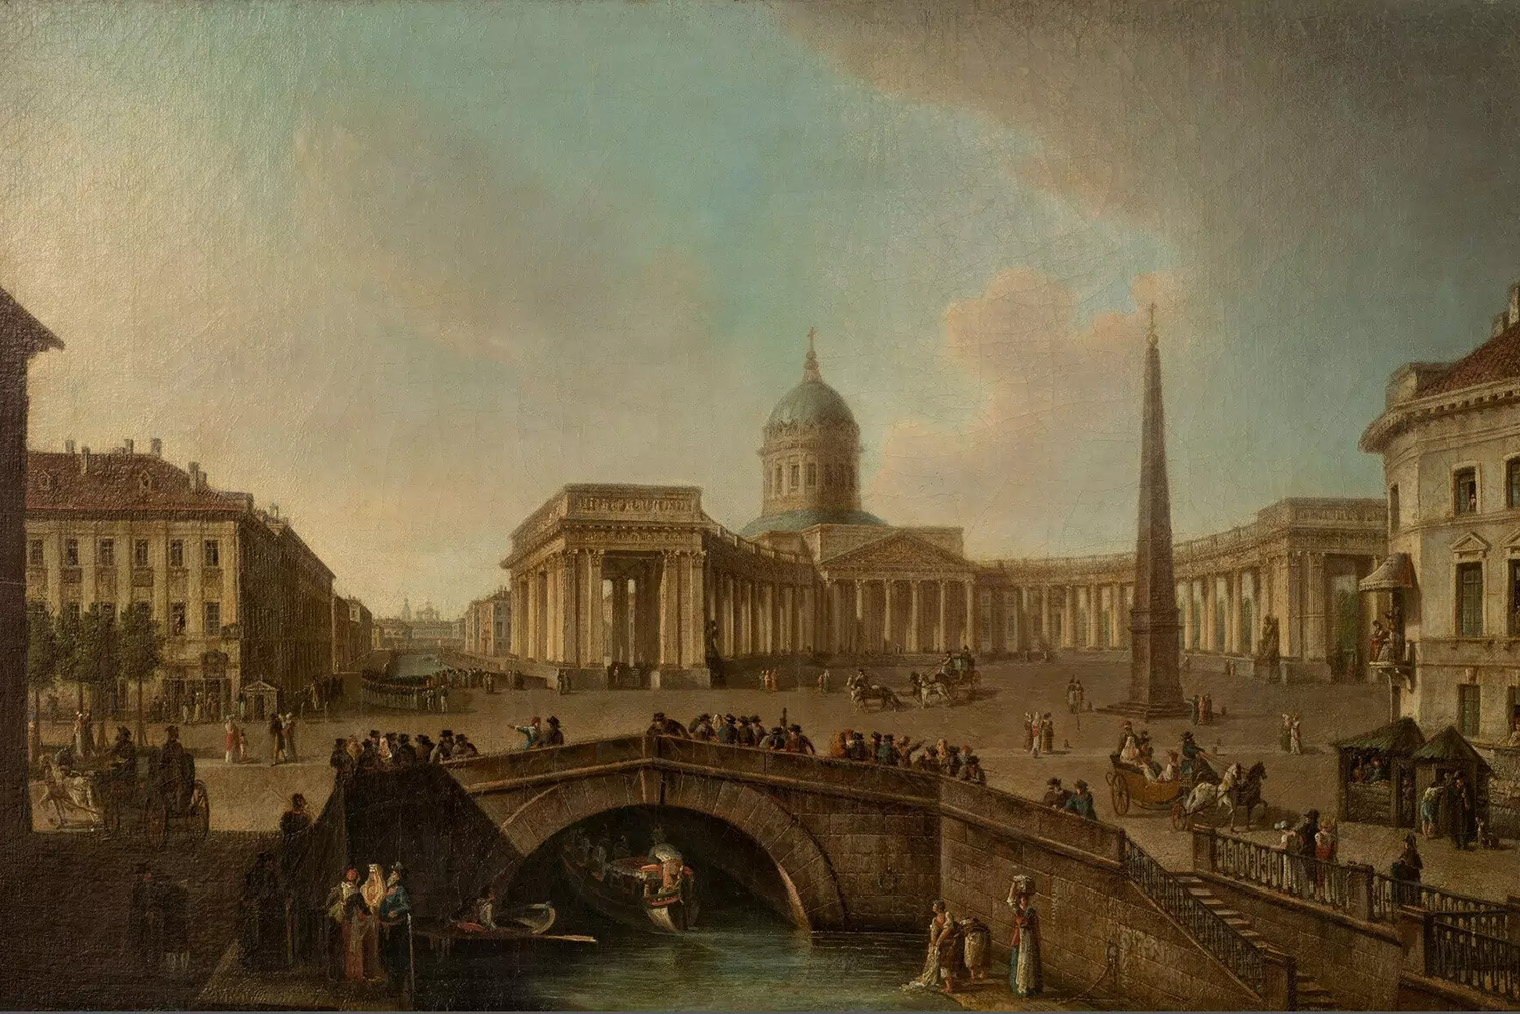 Картина: Федор Алексеев, «Вид Казанского собора в Петербурге», не ранее 1810